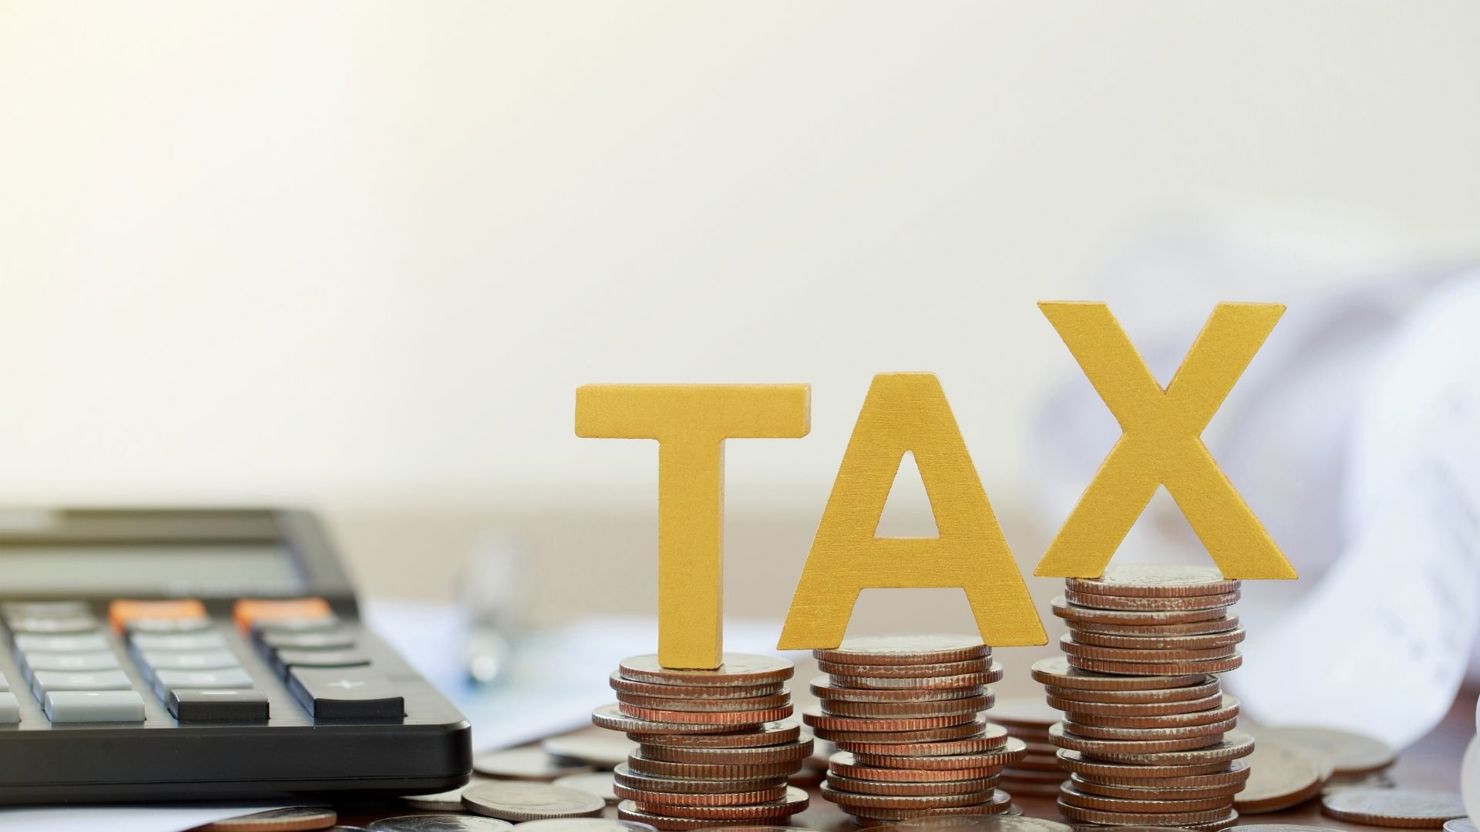 Ngành Thuế bảo đảm mọi doanh nghiệp, người dân đều có thể tiếp cận thông tin và được hỗ trợ quyết toán thuế nhanh nhất.